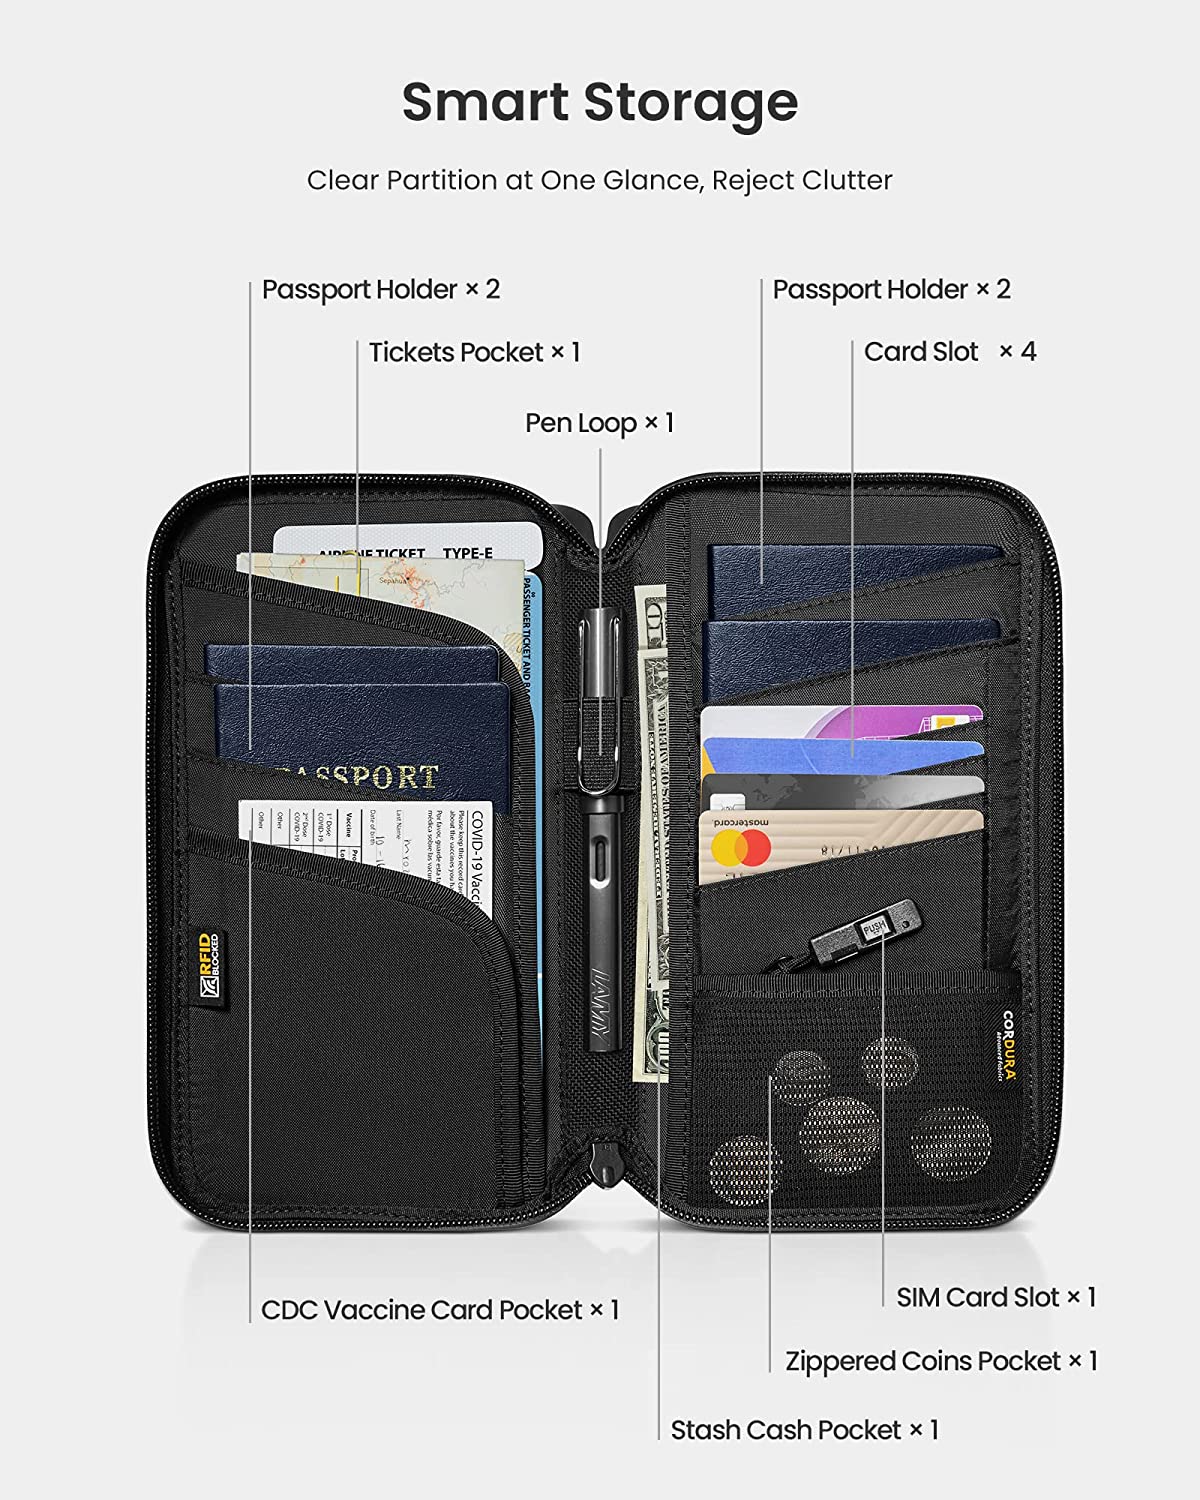 tomtoc Navigator Passport Holder / Passport Wallet / Travel Accessories - Black